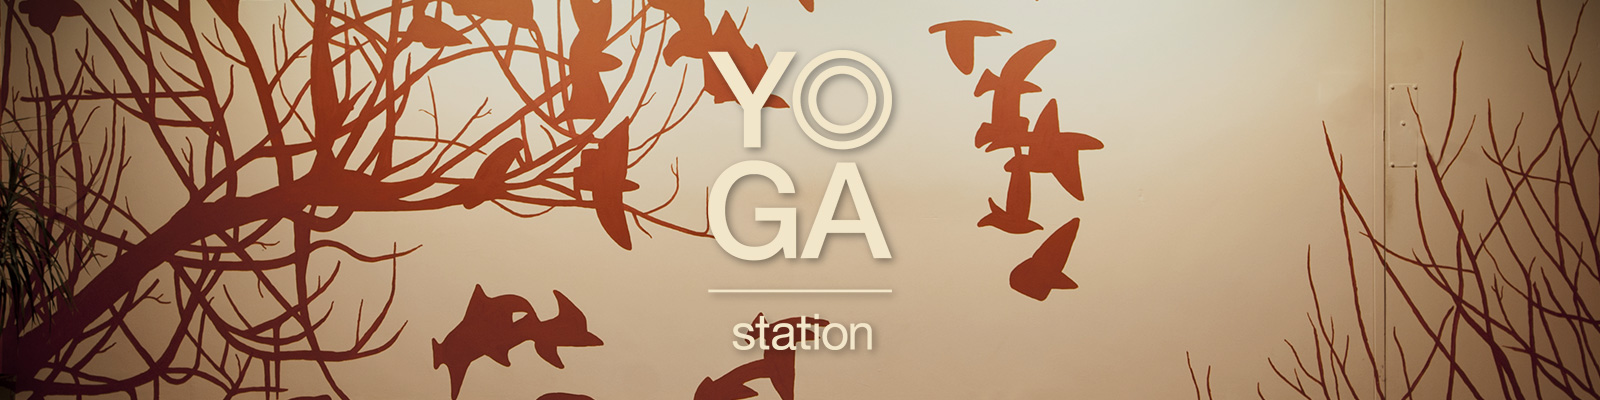 yoga-station-home-wall-gv